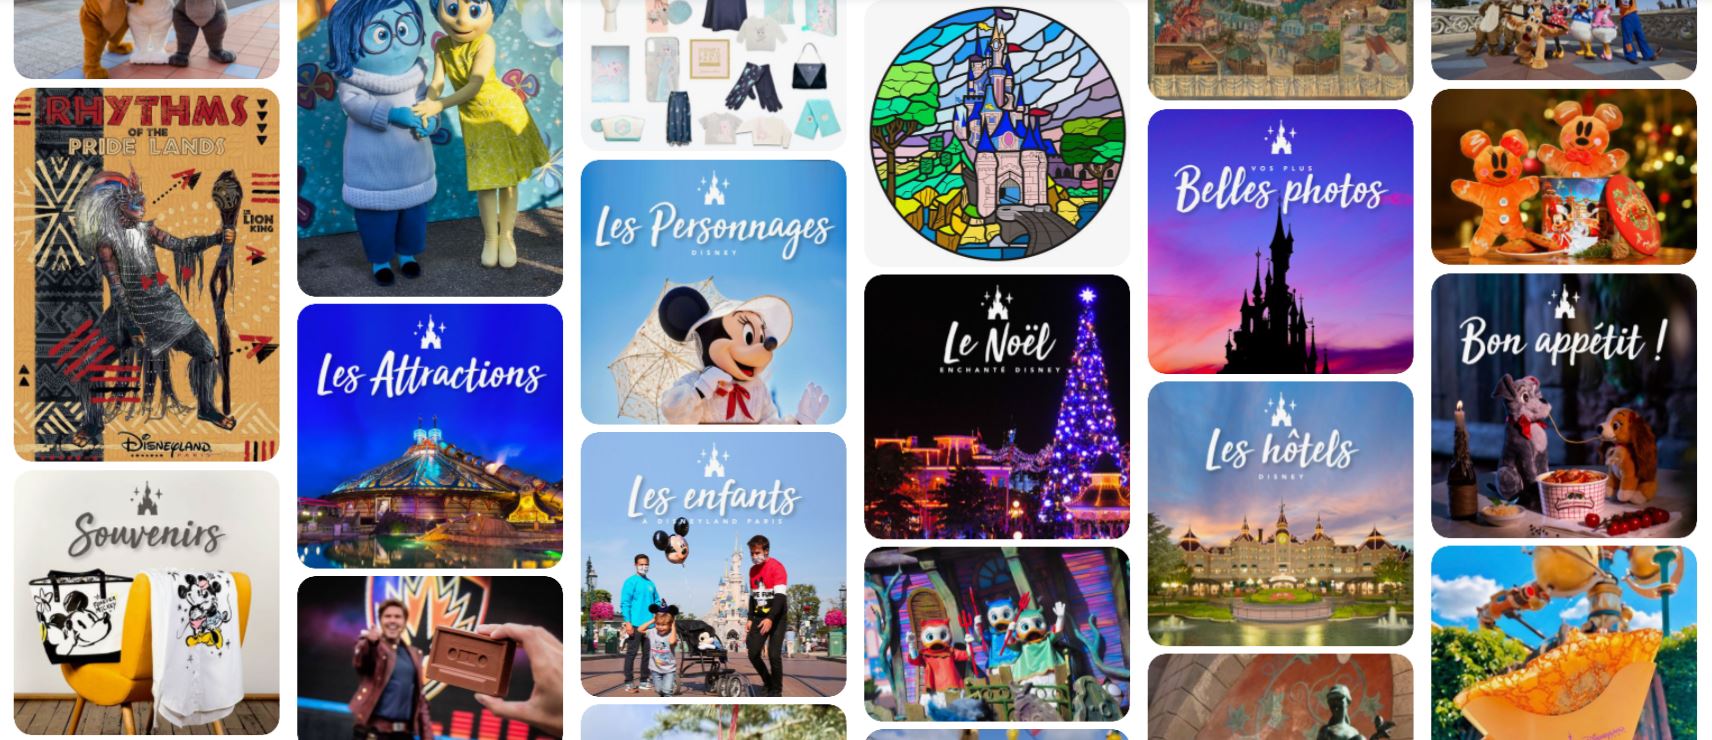 Disneyland Paris est maintenant sur Pinterest